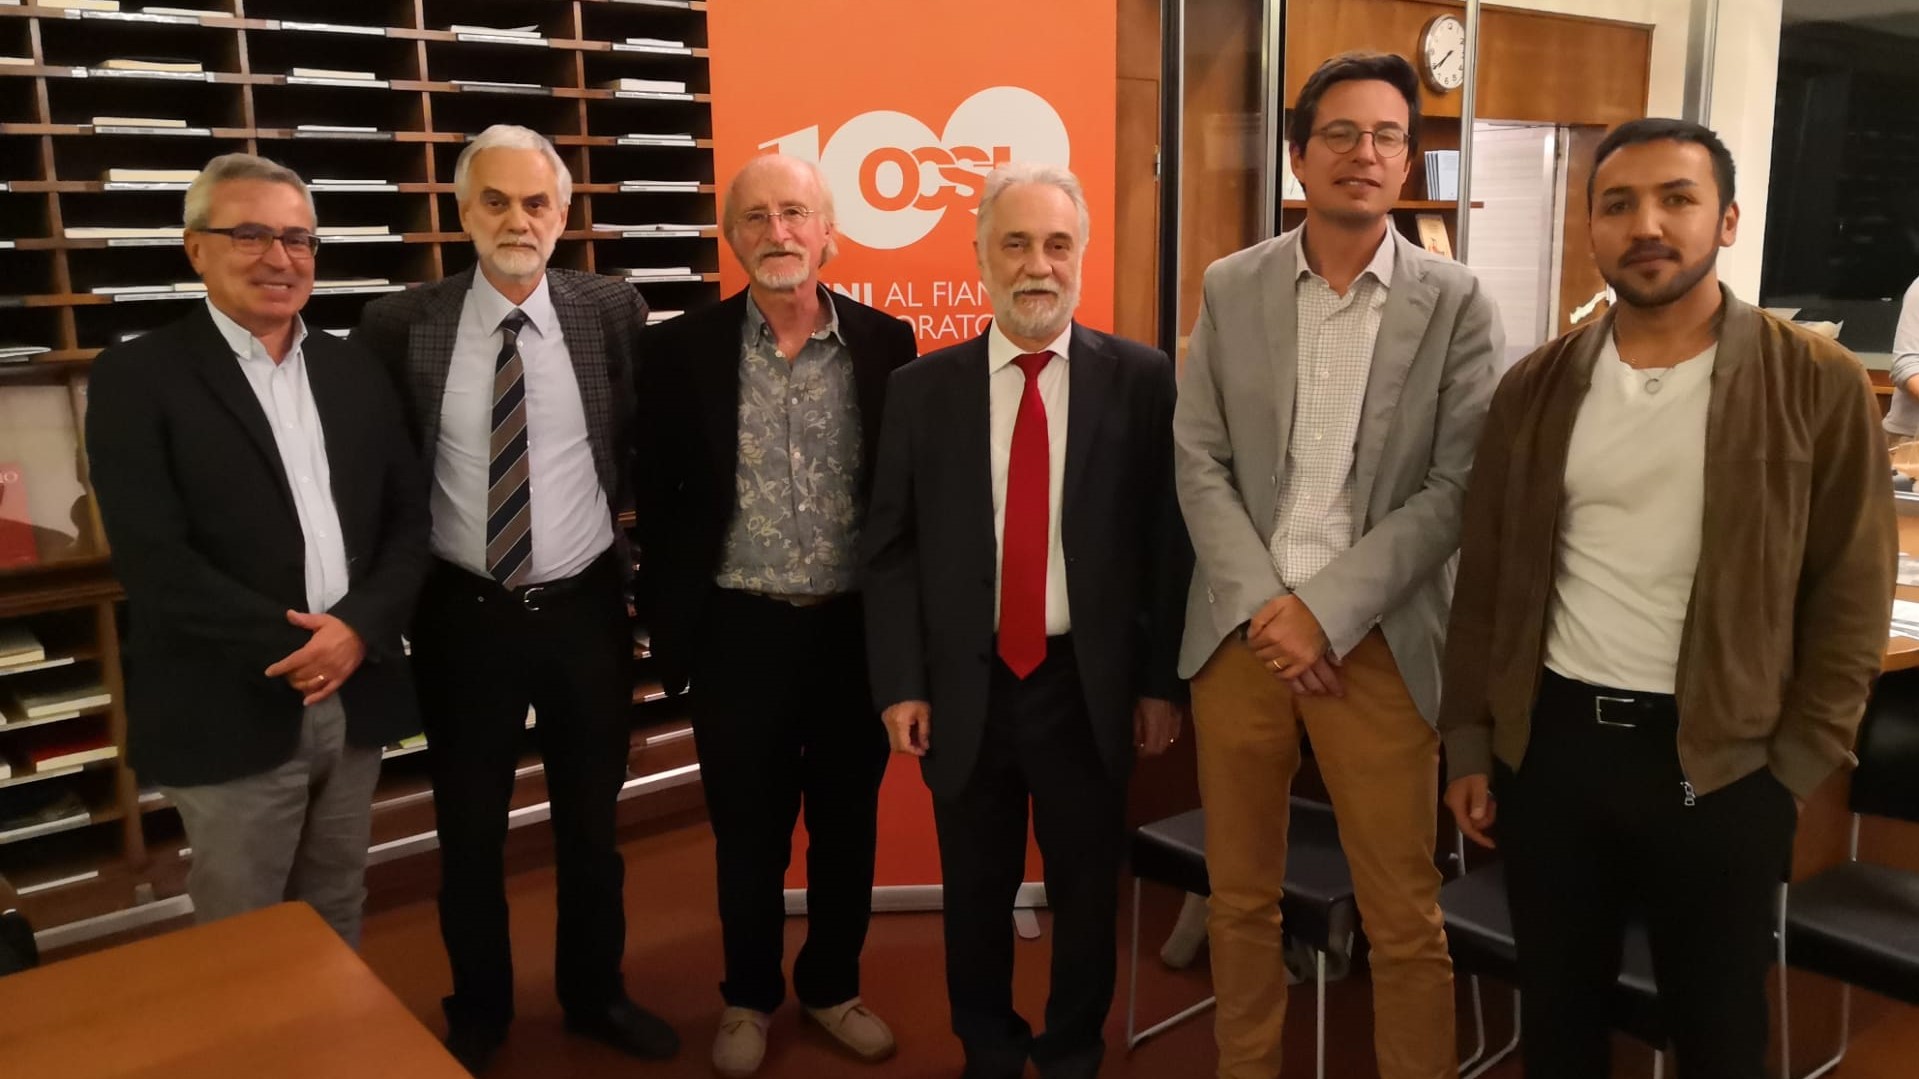 Nella foto, da sinistra: 
Renato Ricciardi, Antonio Gili, Alberto Gandolla, Giorgio Vecchio, Luca Saltini e Mobin Sado (autore di alcuni disegni esposti alla mostra)